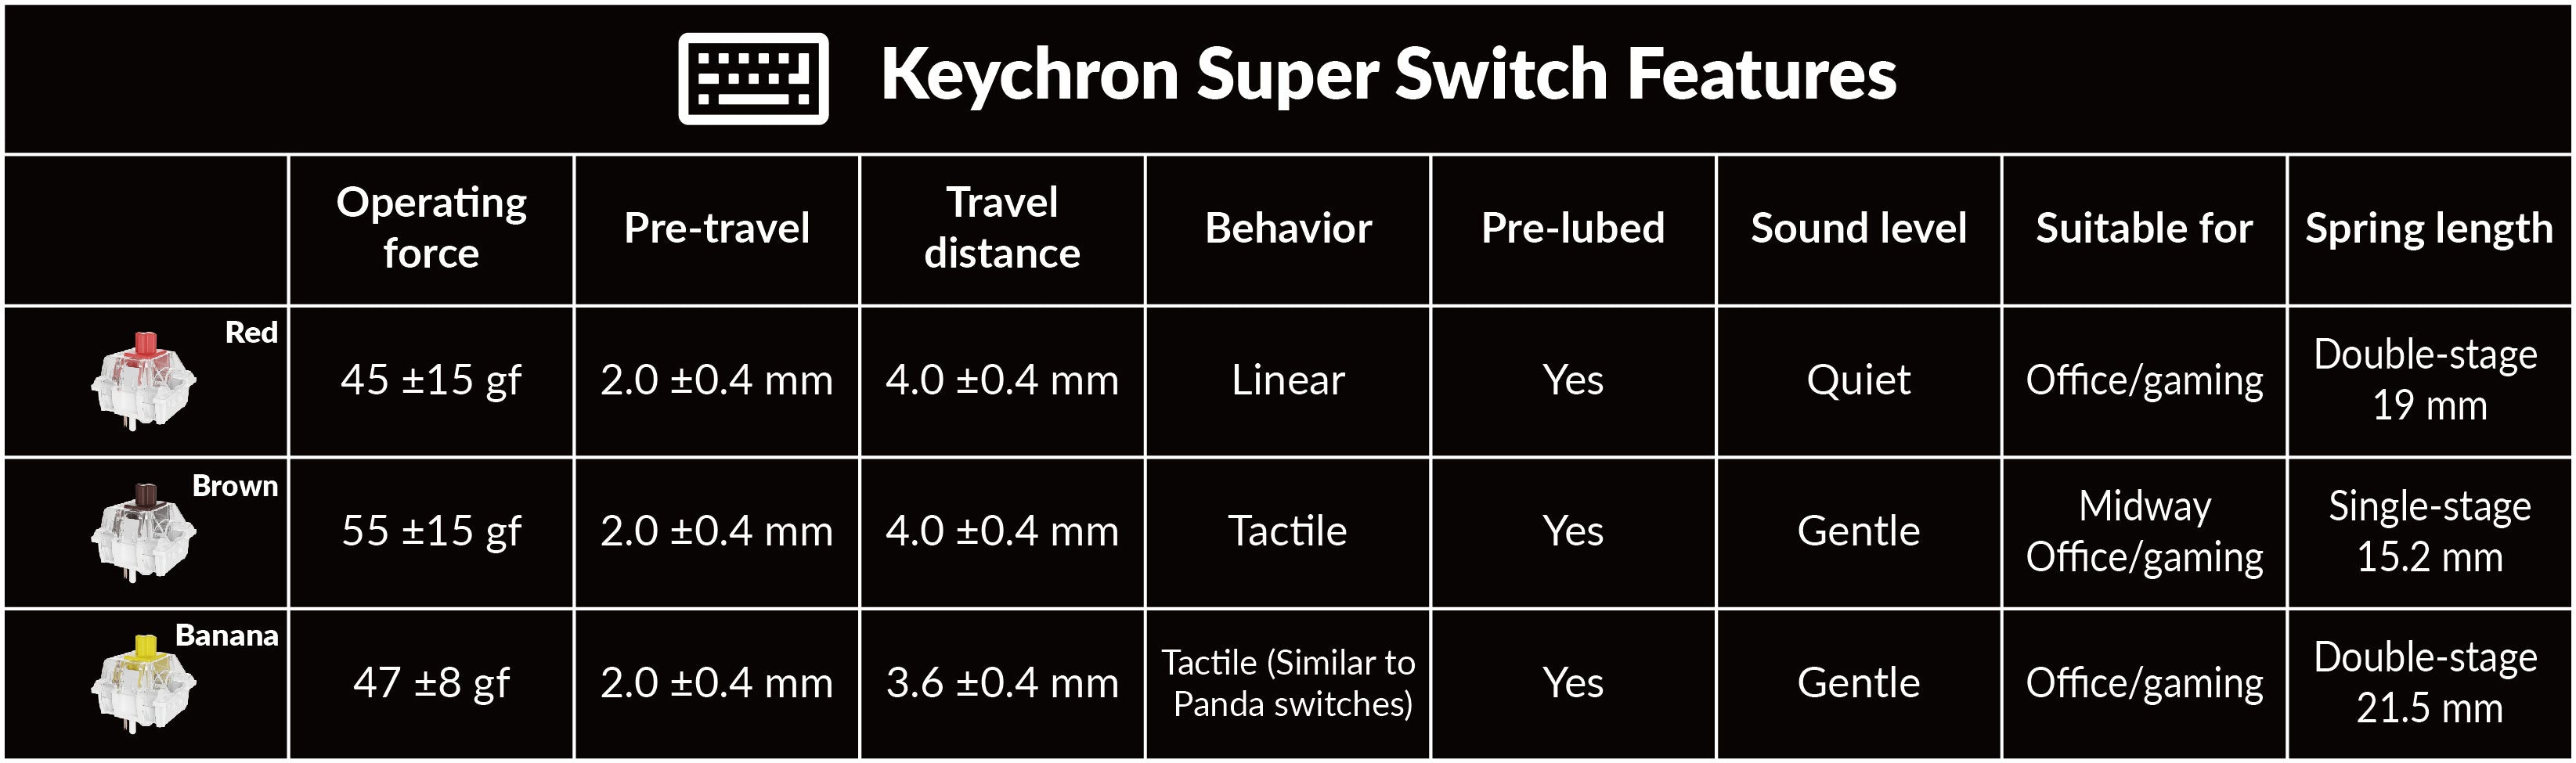 Keychron-Super-Switch-Features.jpg__PID:bd87b757-7fc8-4bfa-8ace-badc0b9990ec